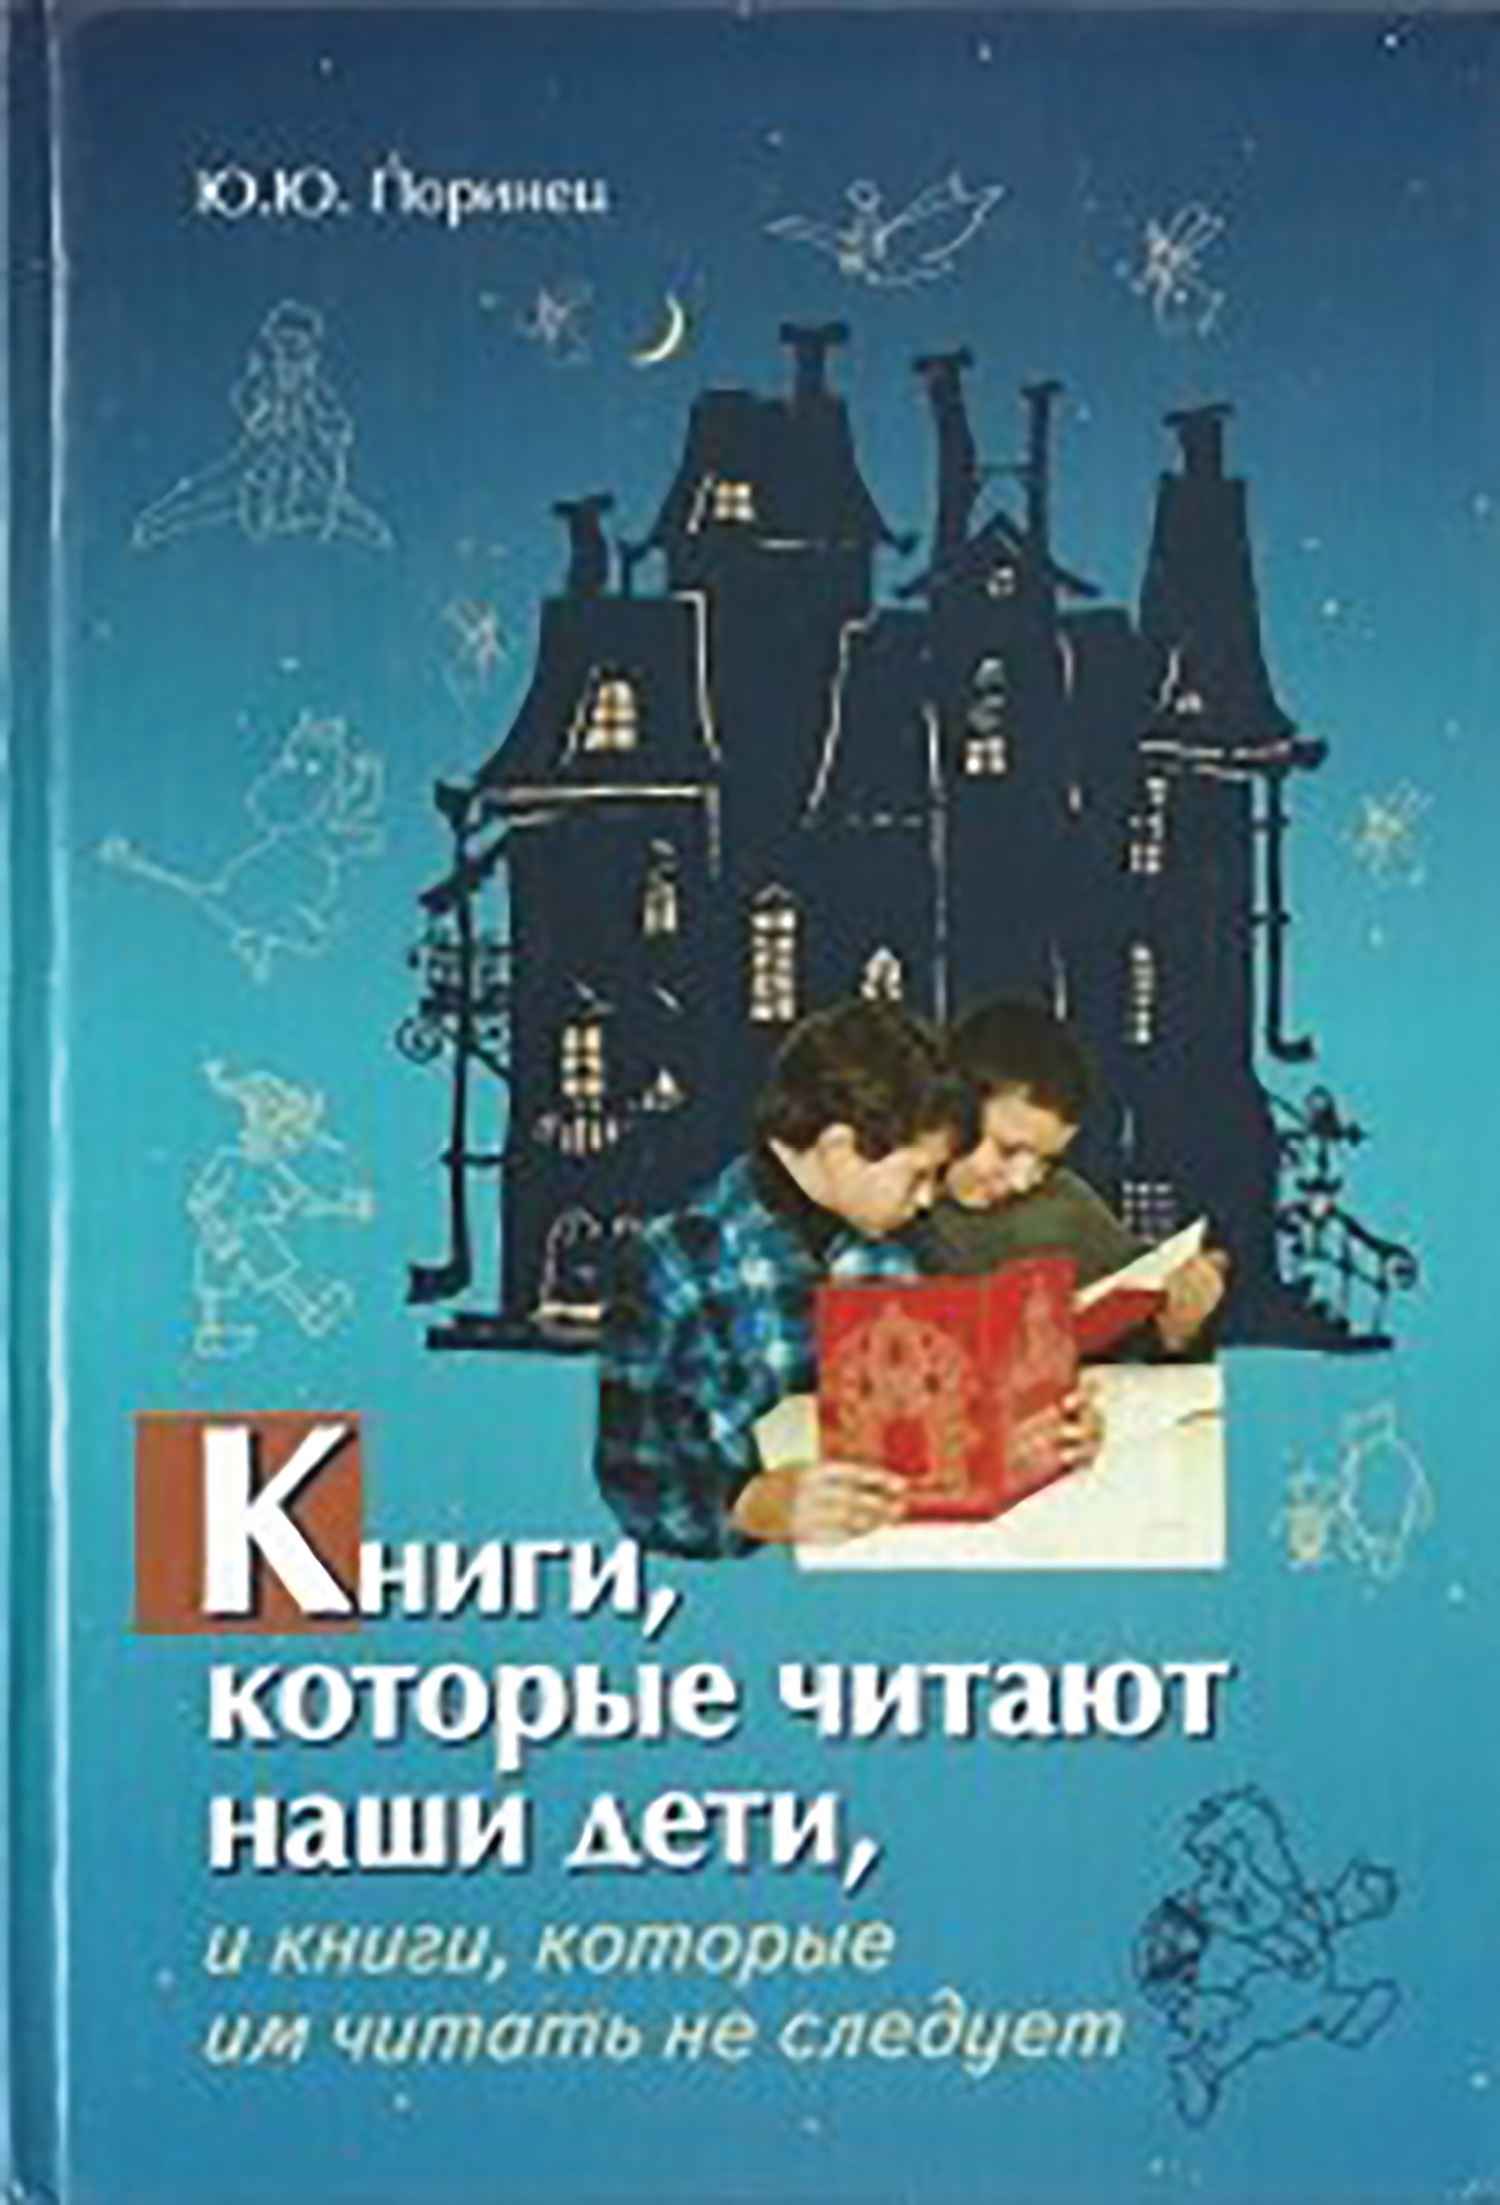 Книги, которые читают наши дети, и книги, которые им читать не следует - Юрий Юрьевич Поринец